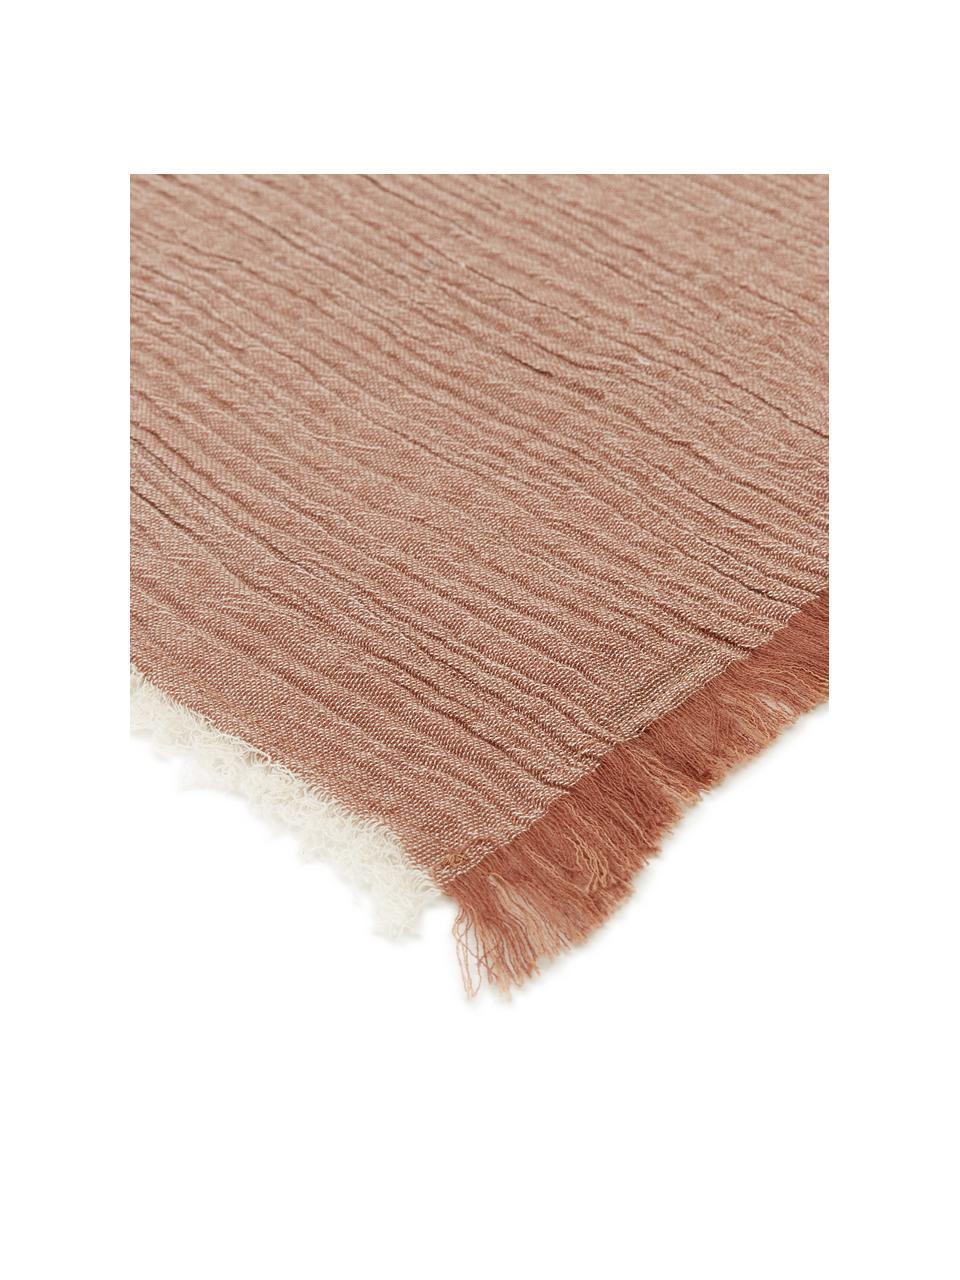 Stoff-Servietten Layer in Terrakotta, 4 Stück, 100% Baumwolle, Terrakotta, 45 x 45 cm